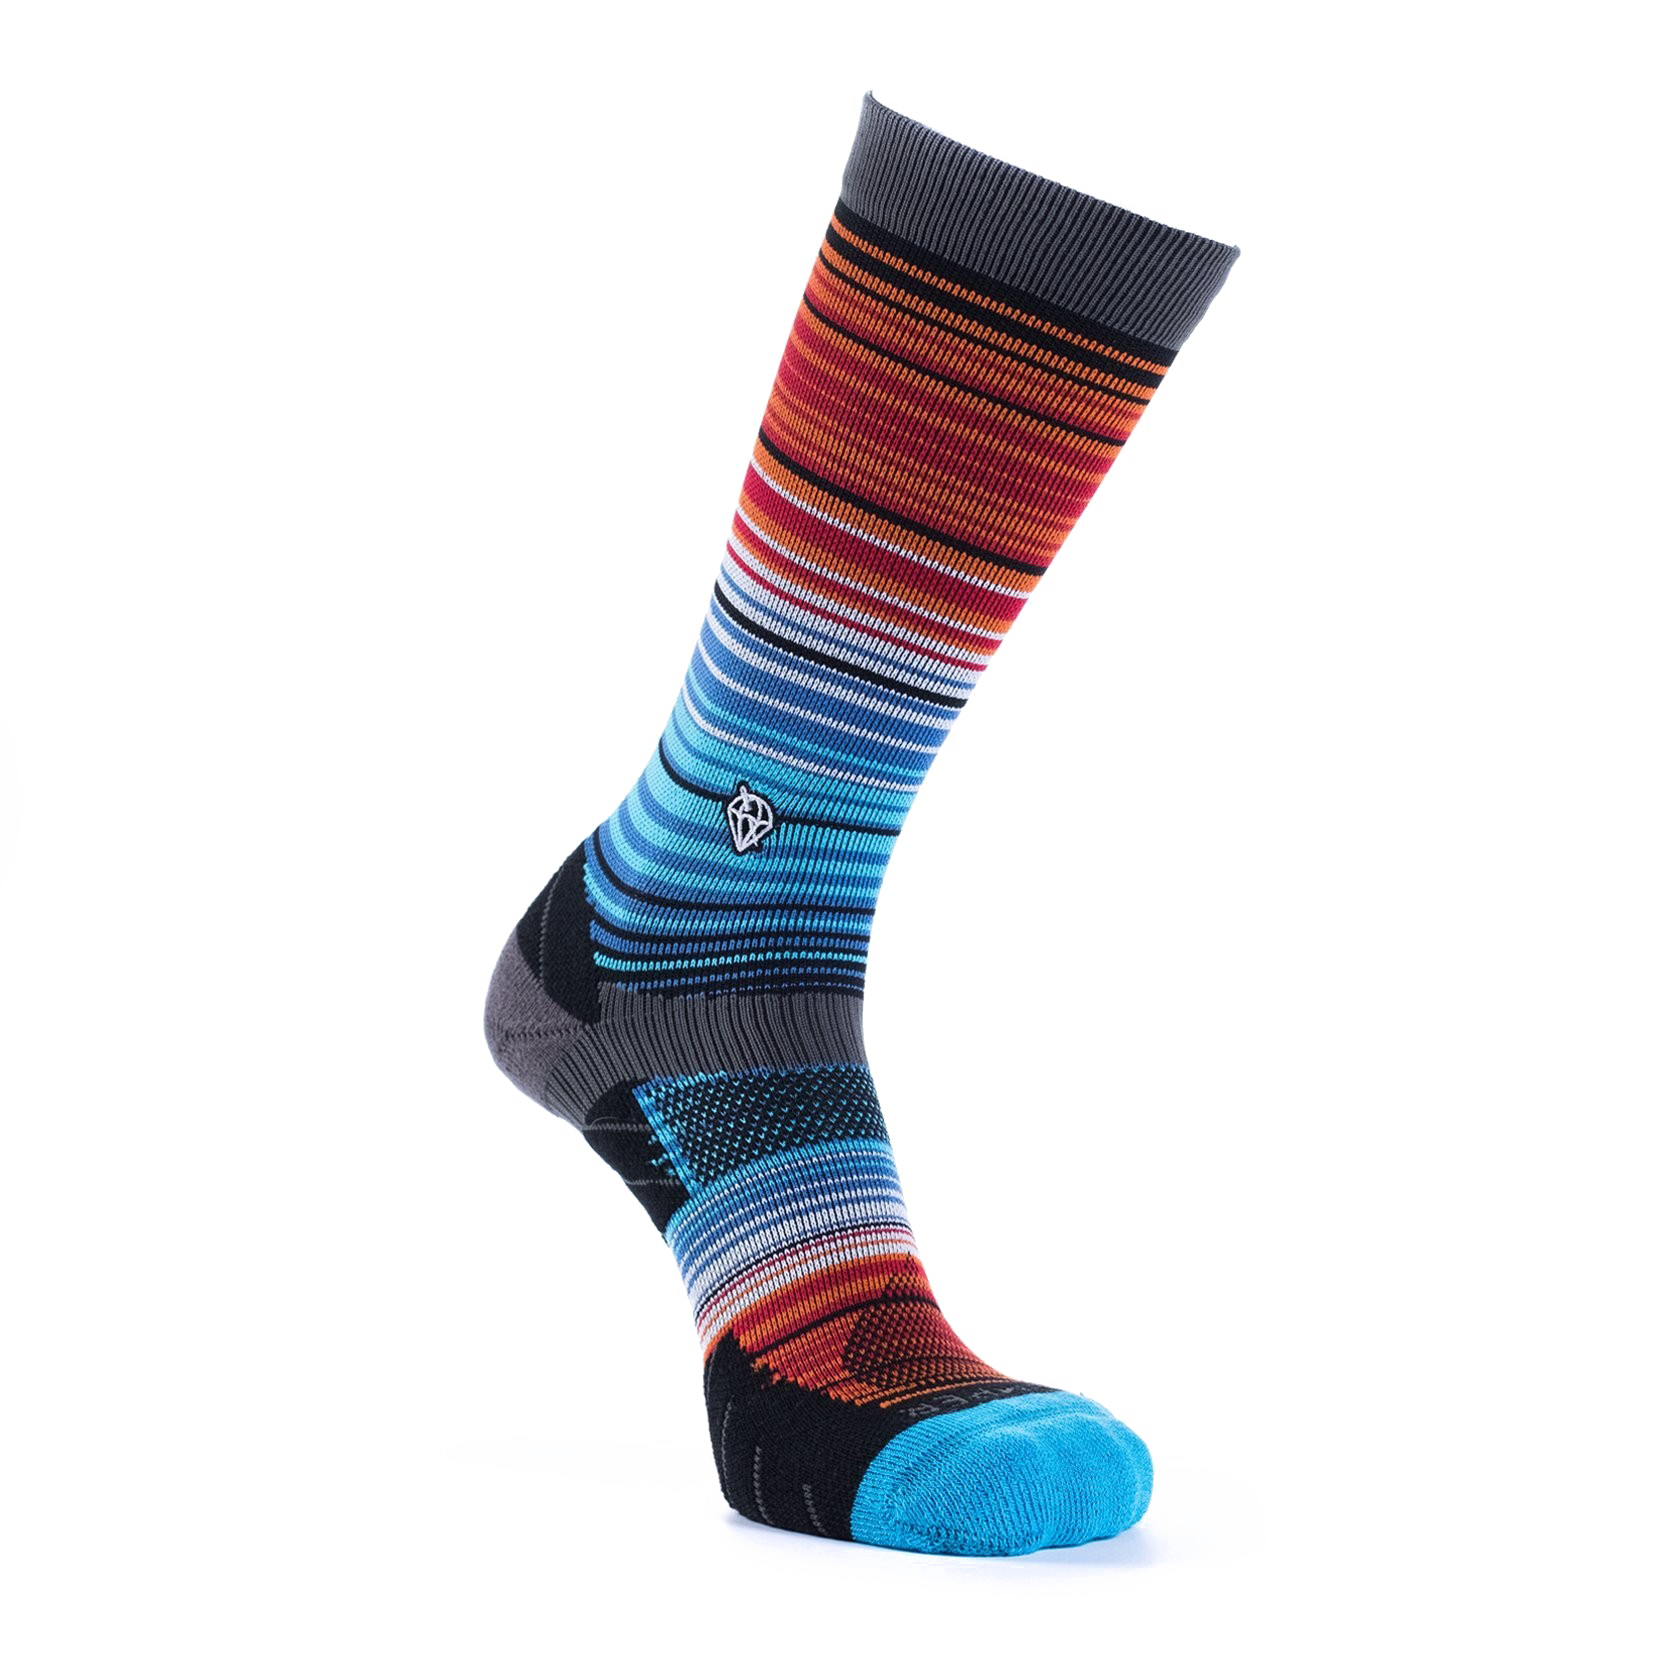 Socks PNG Background Image